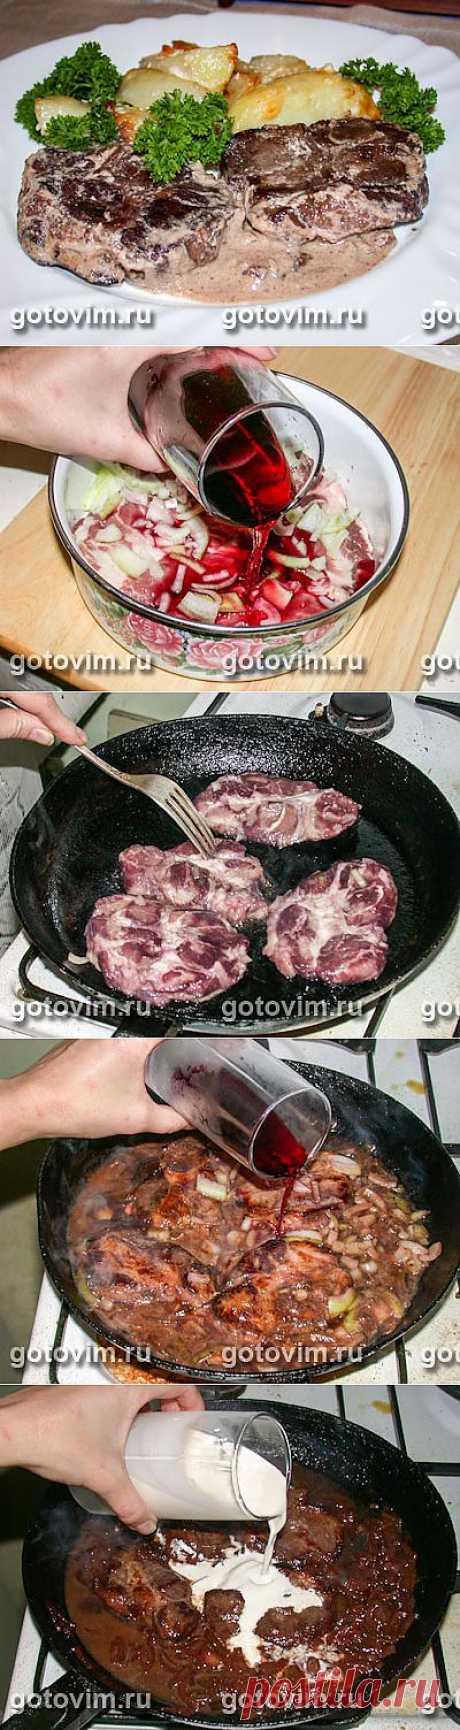 Мясо в красном вине. Фото-рецепт / Готовим.РУ